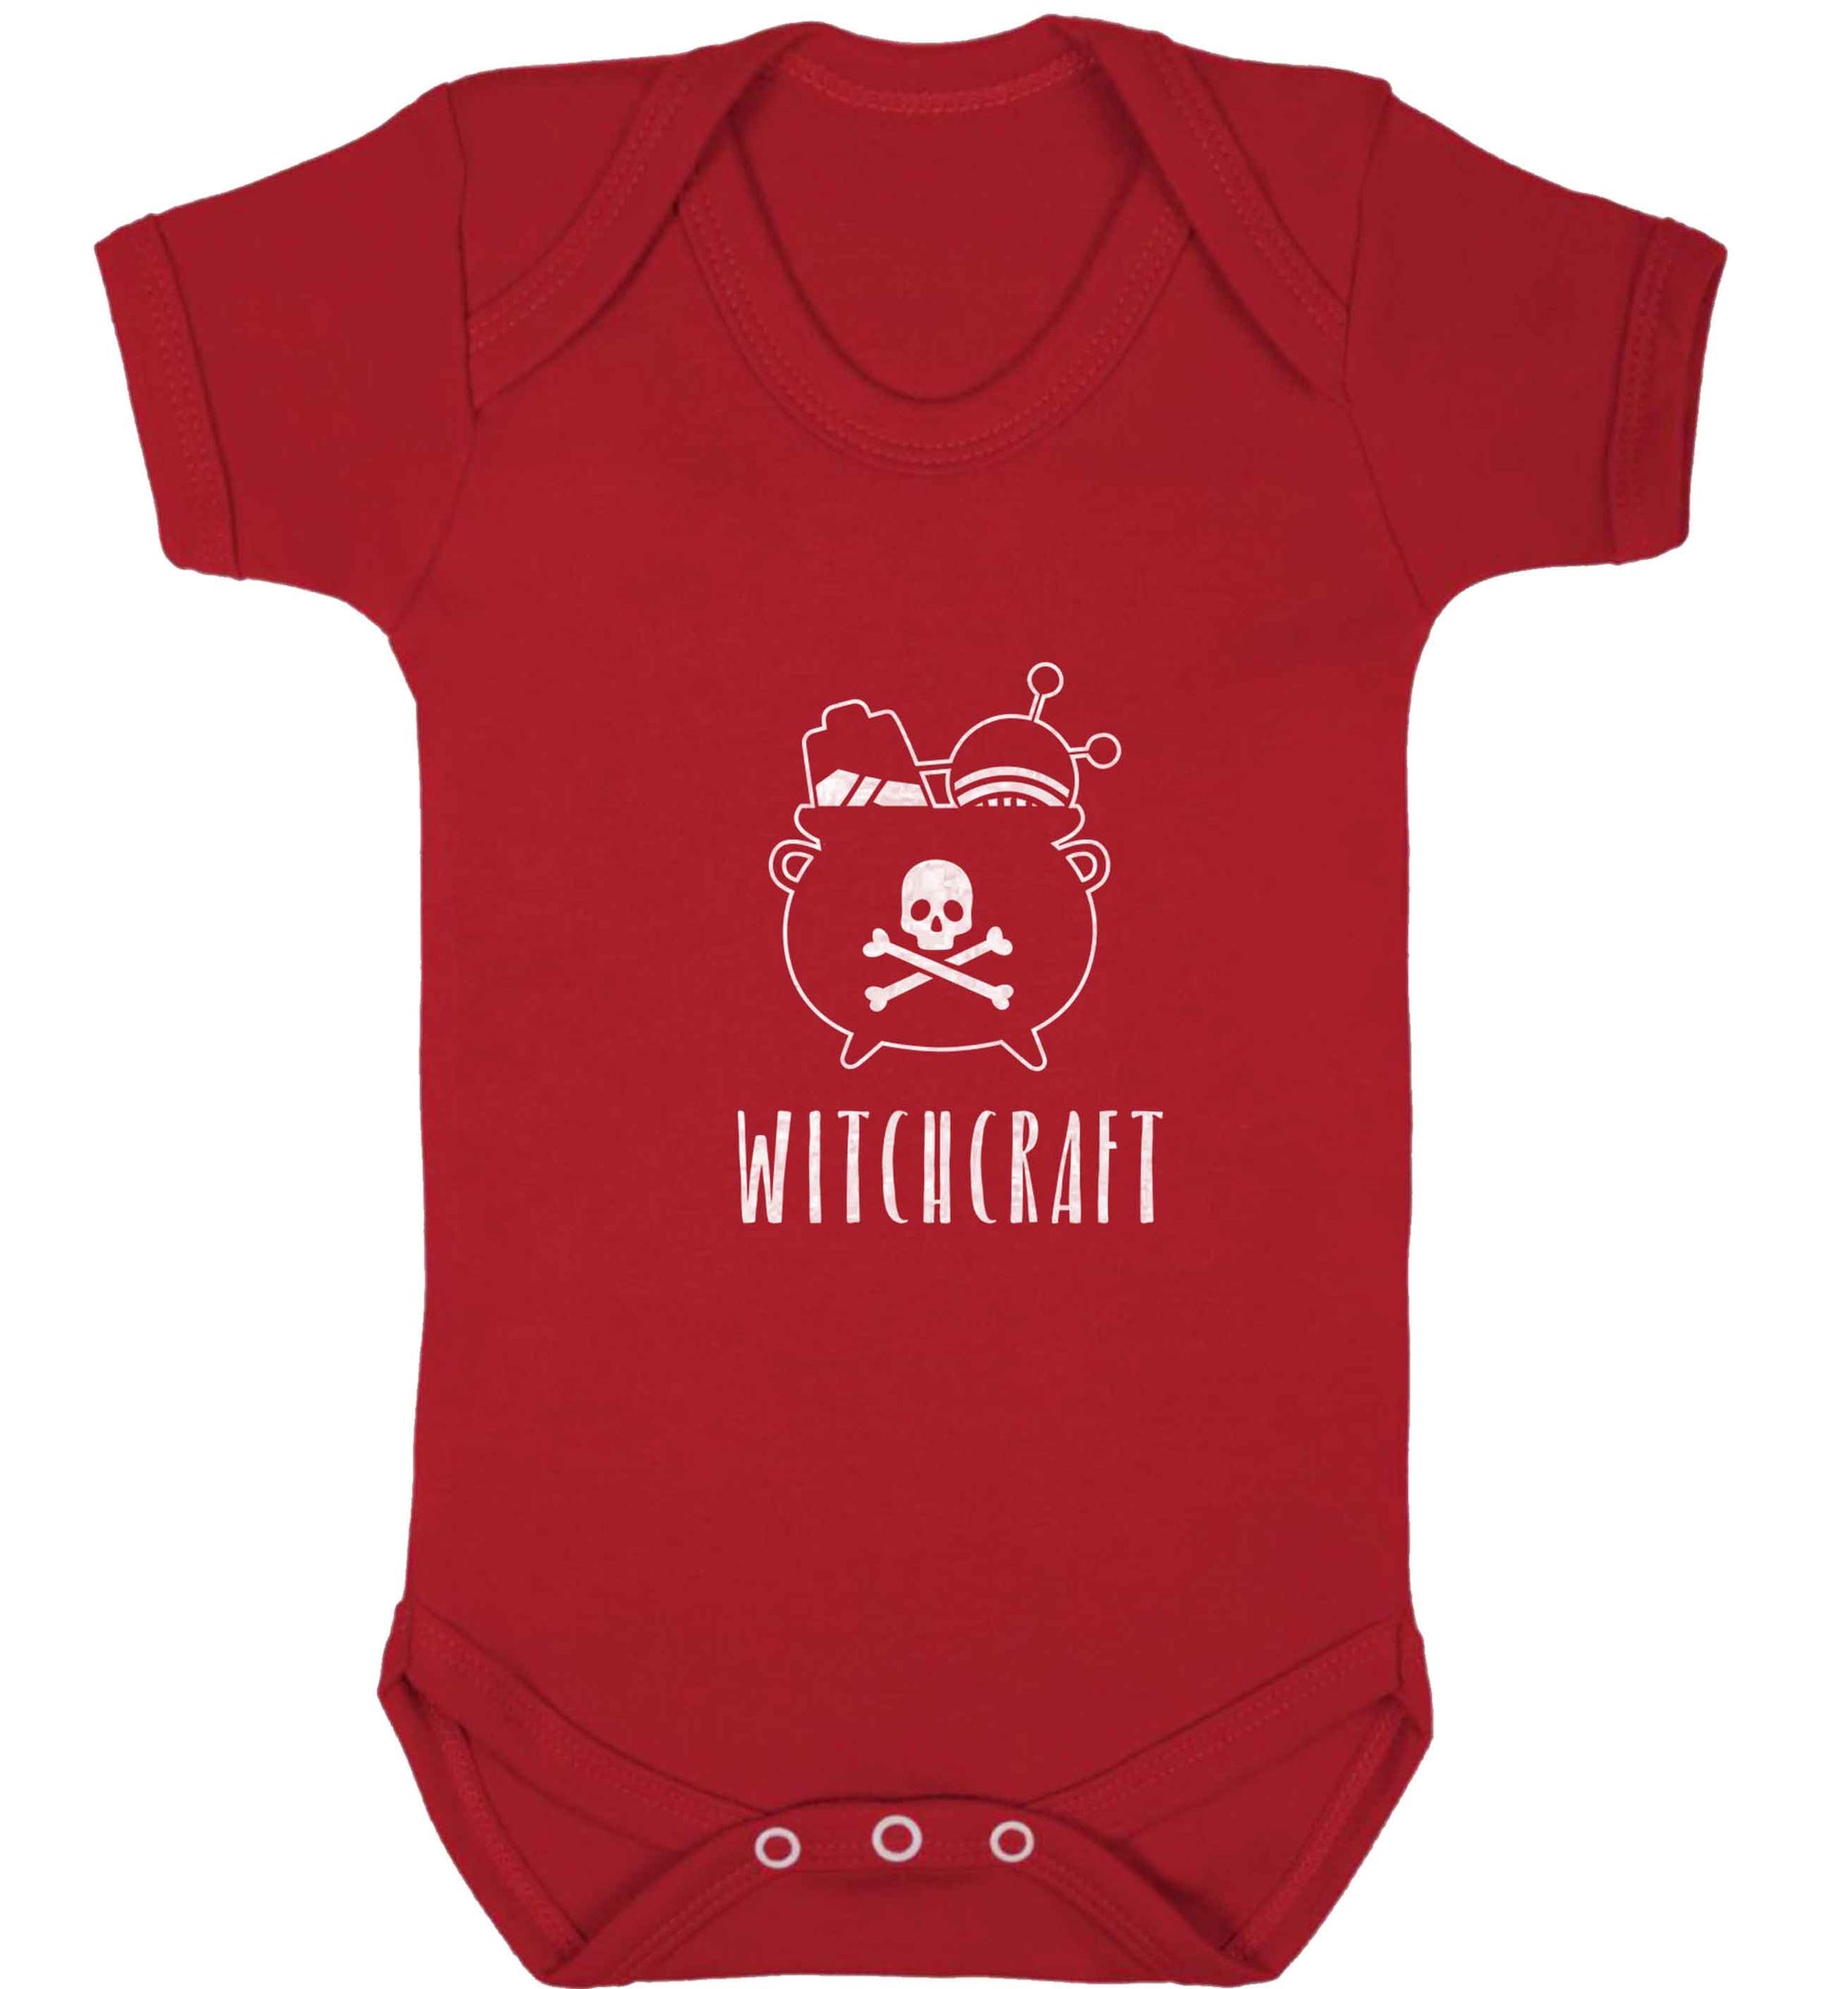 Witchcraft baby vest red 18-24 months